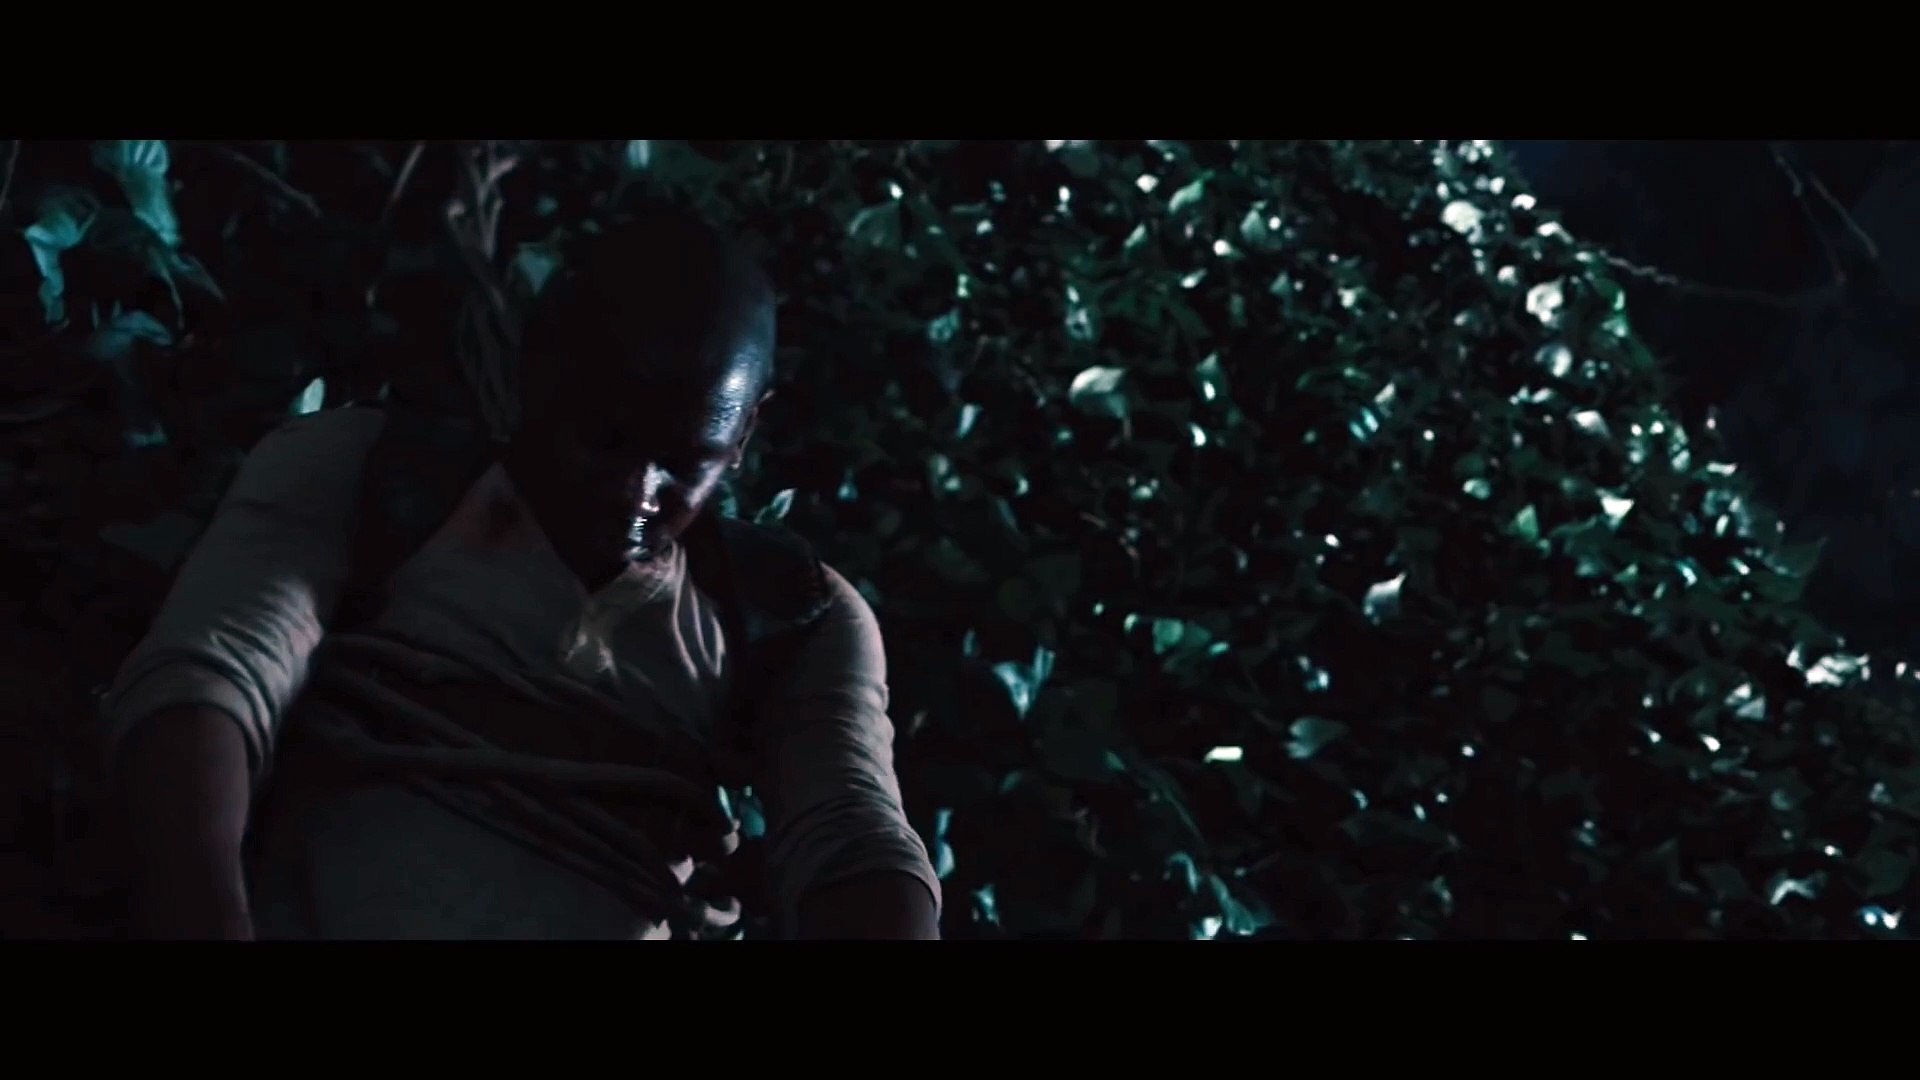 VIDEO] 'The Maze Runner' Trailer: Meet 'The Grievers' – The